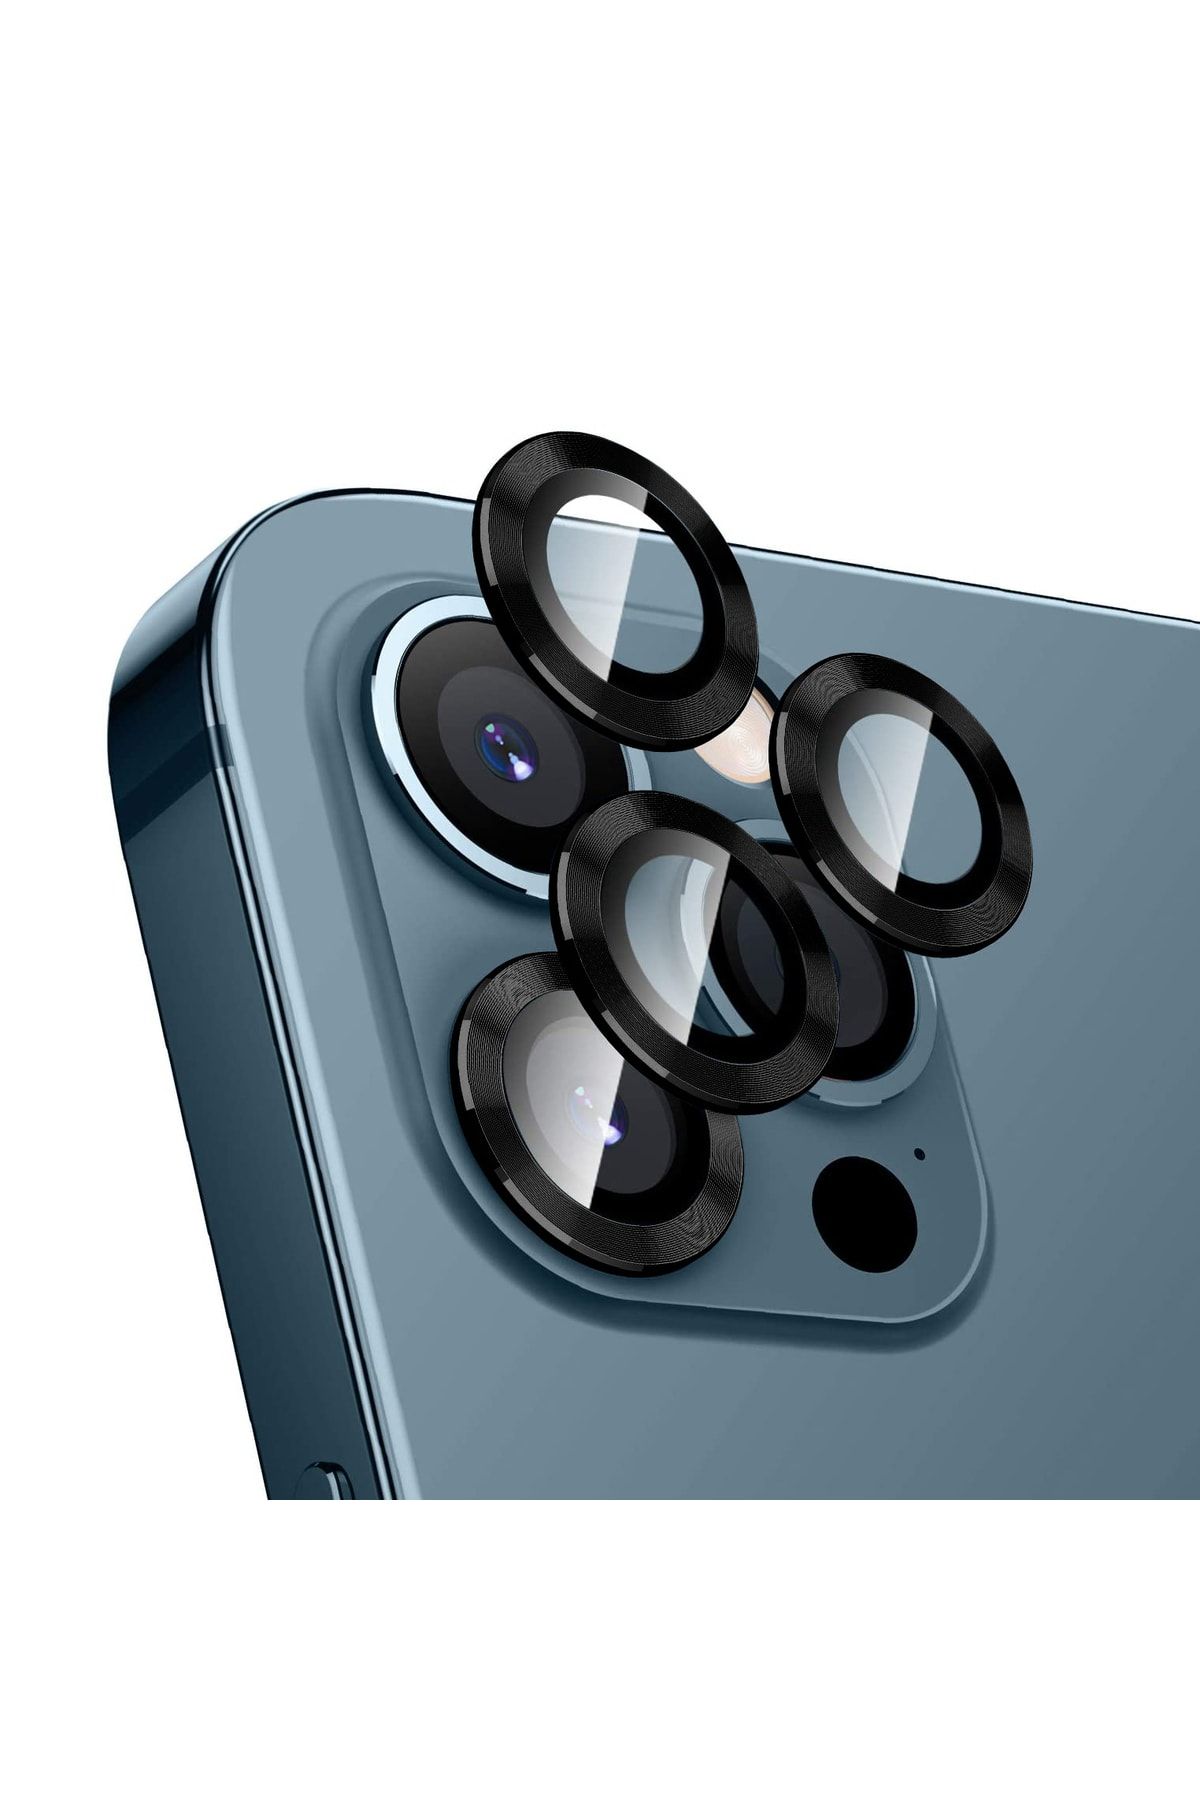 Bufalo Iphone 12 Pro Max Uyumlu Kamera Lens Koruyucu Cam Metal Kenarlı 3 lü Set